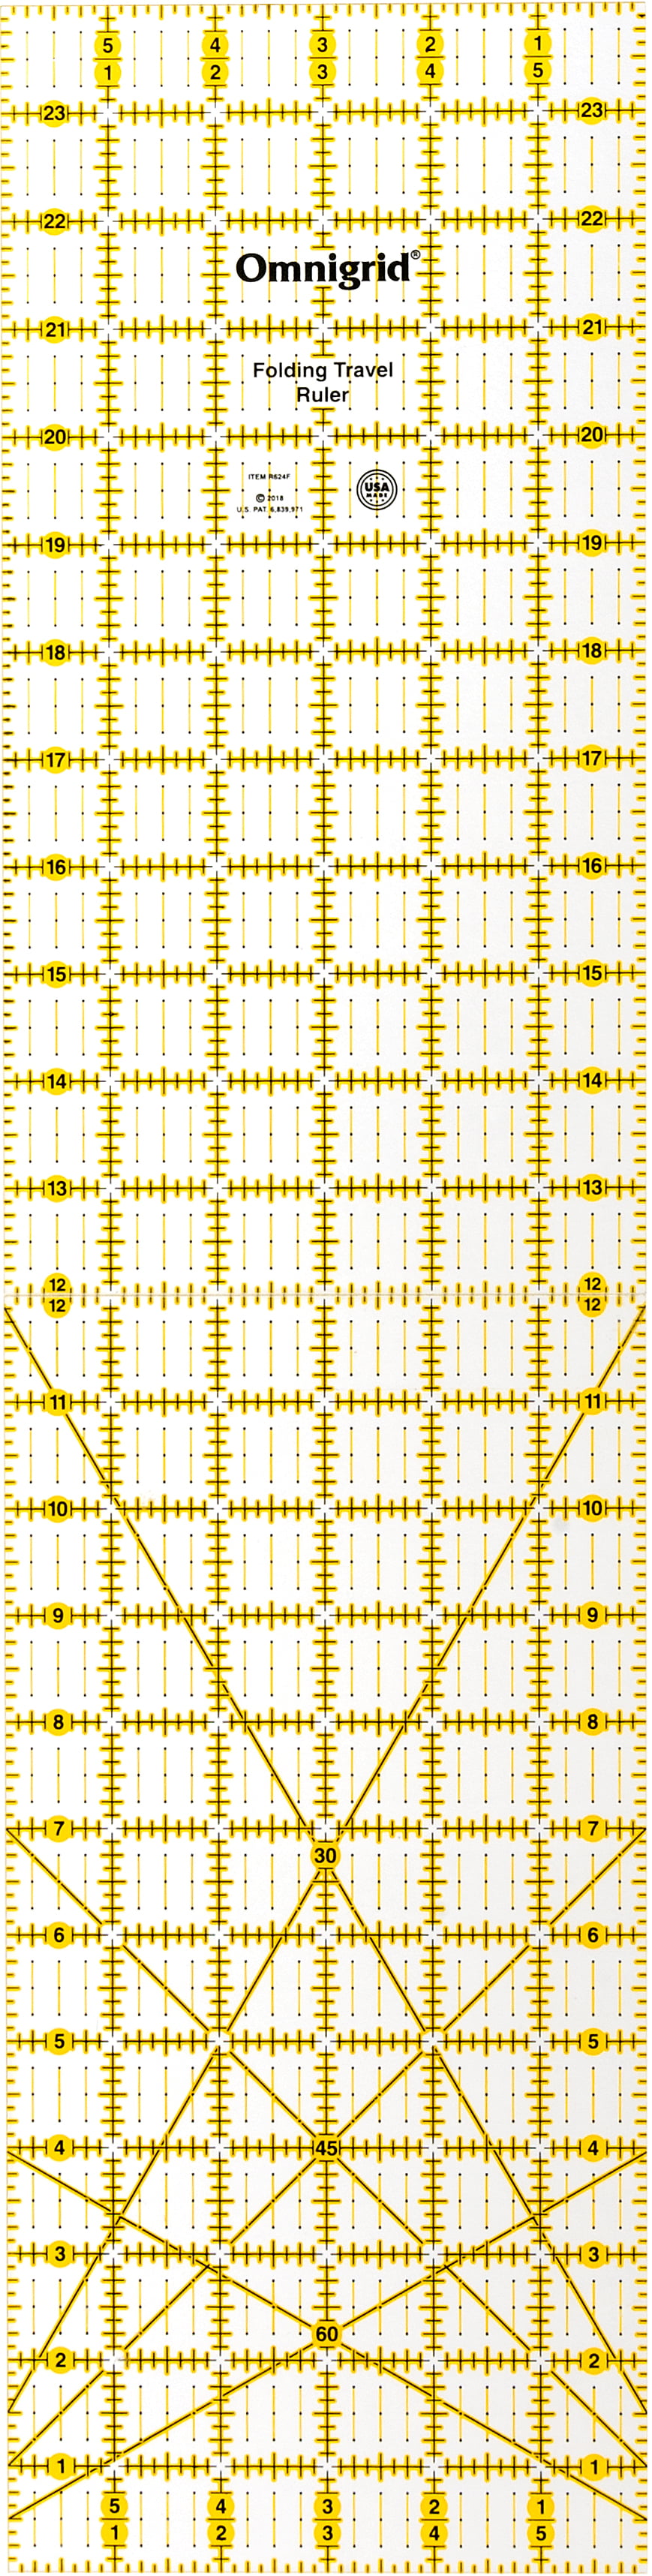 6 x 24-Inch Omnigrid R624F Folding Ruler Clear 